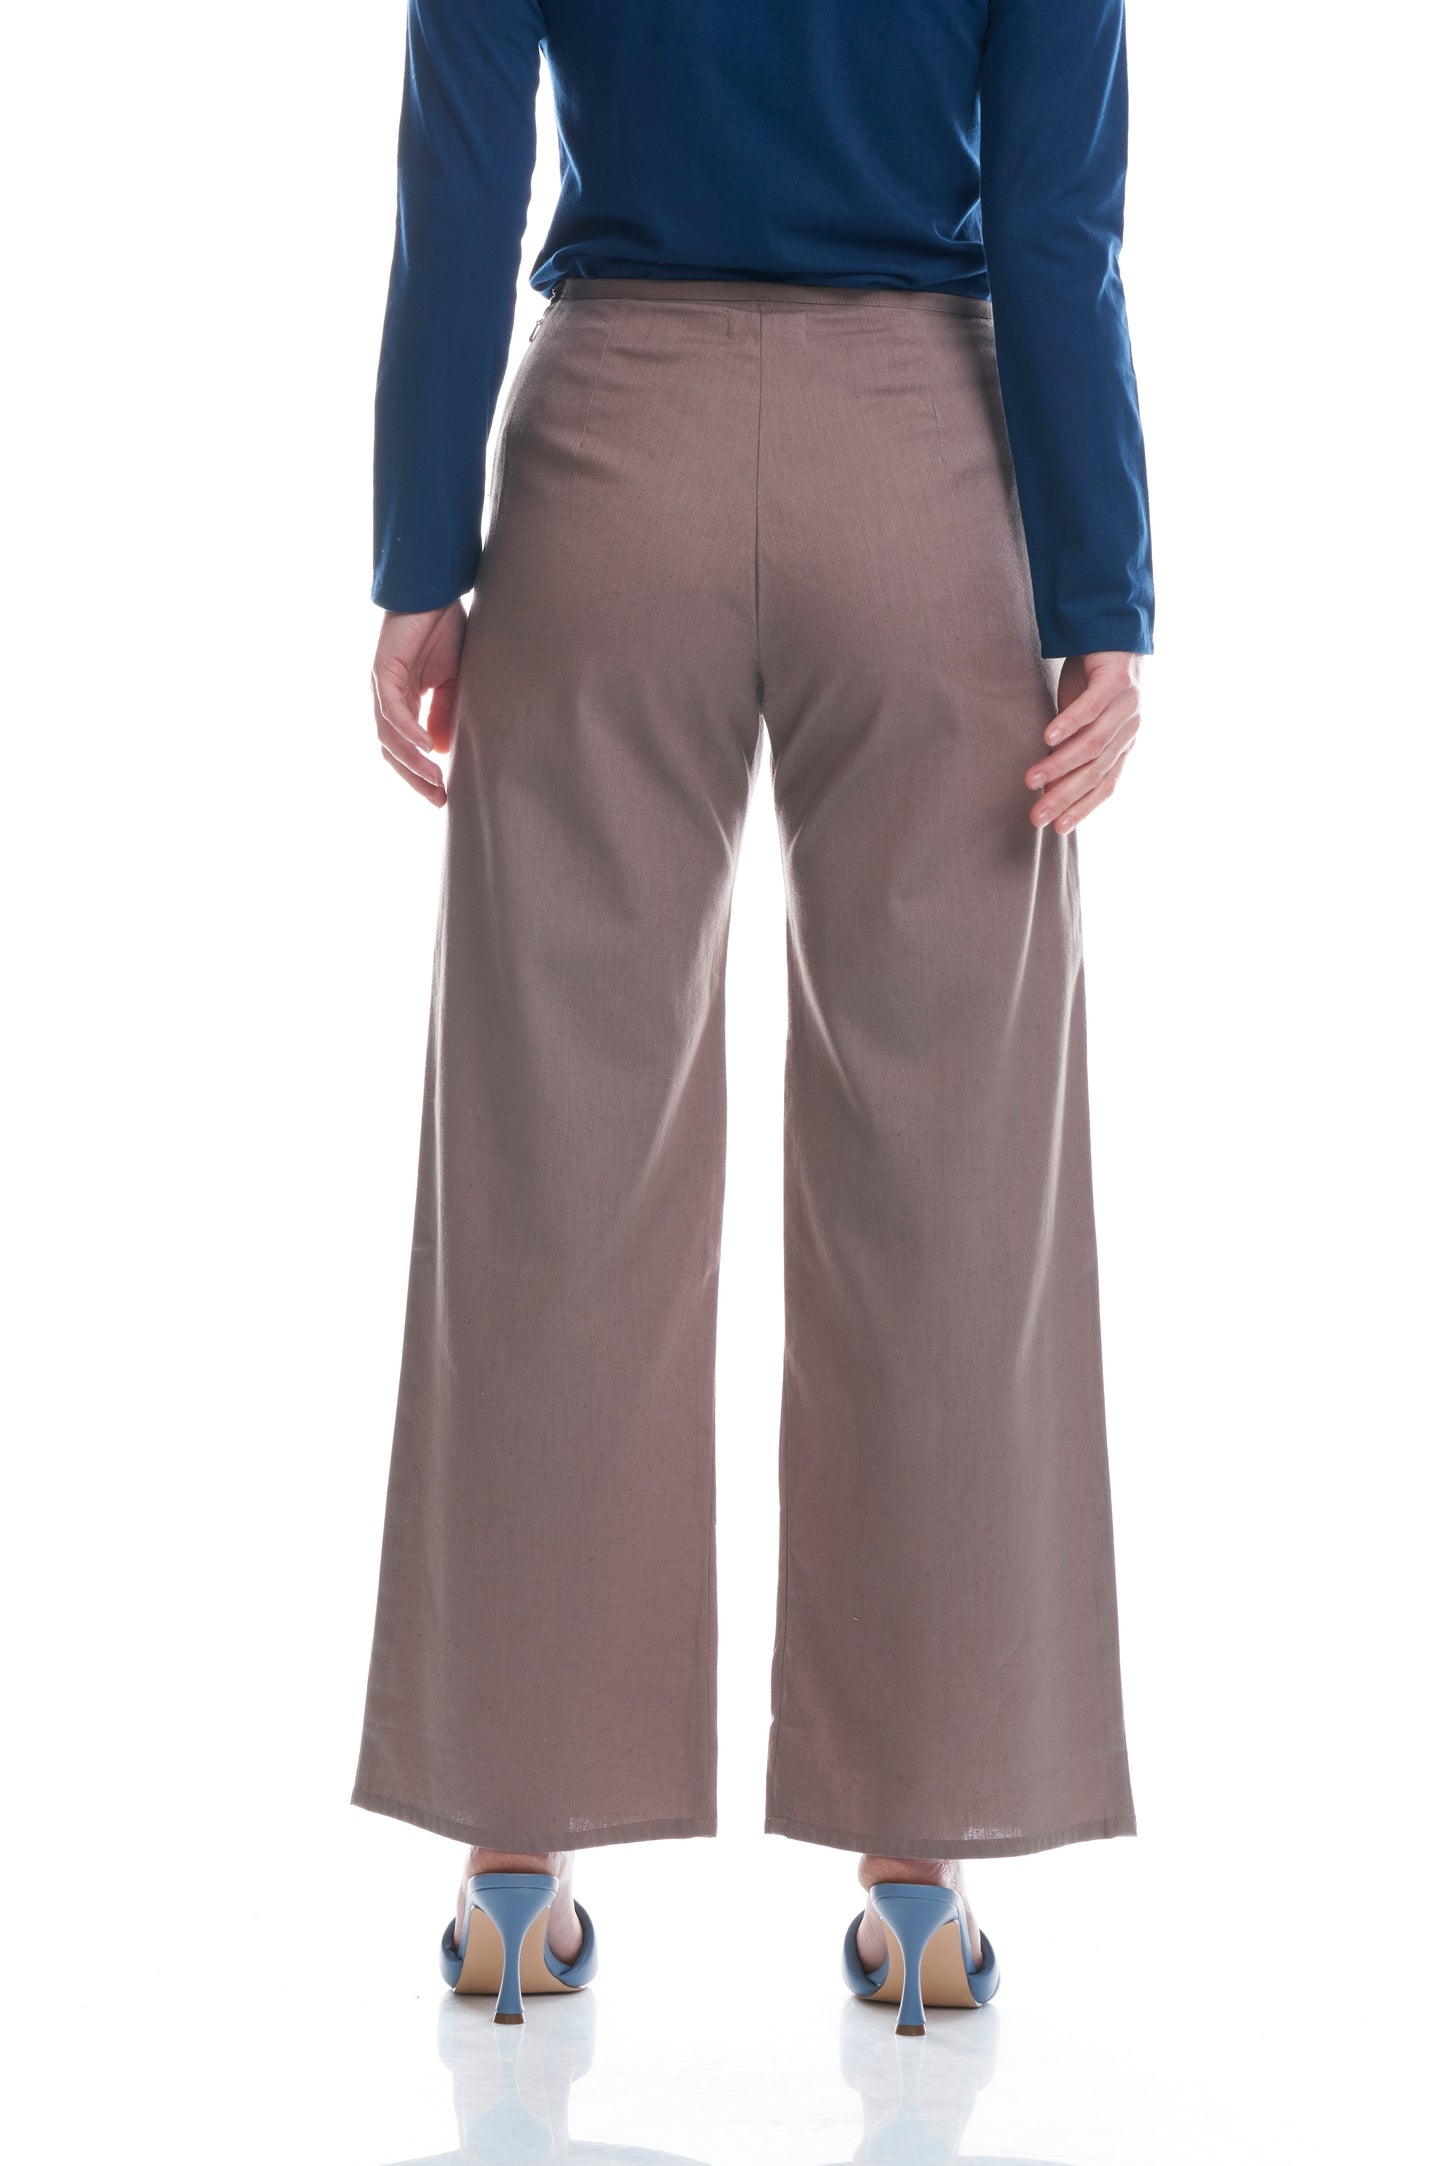 Pantalone Giunco cotone e lino